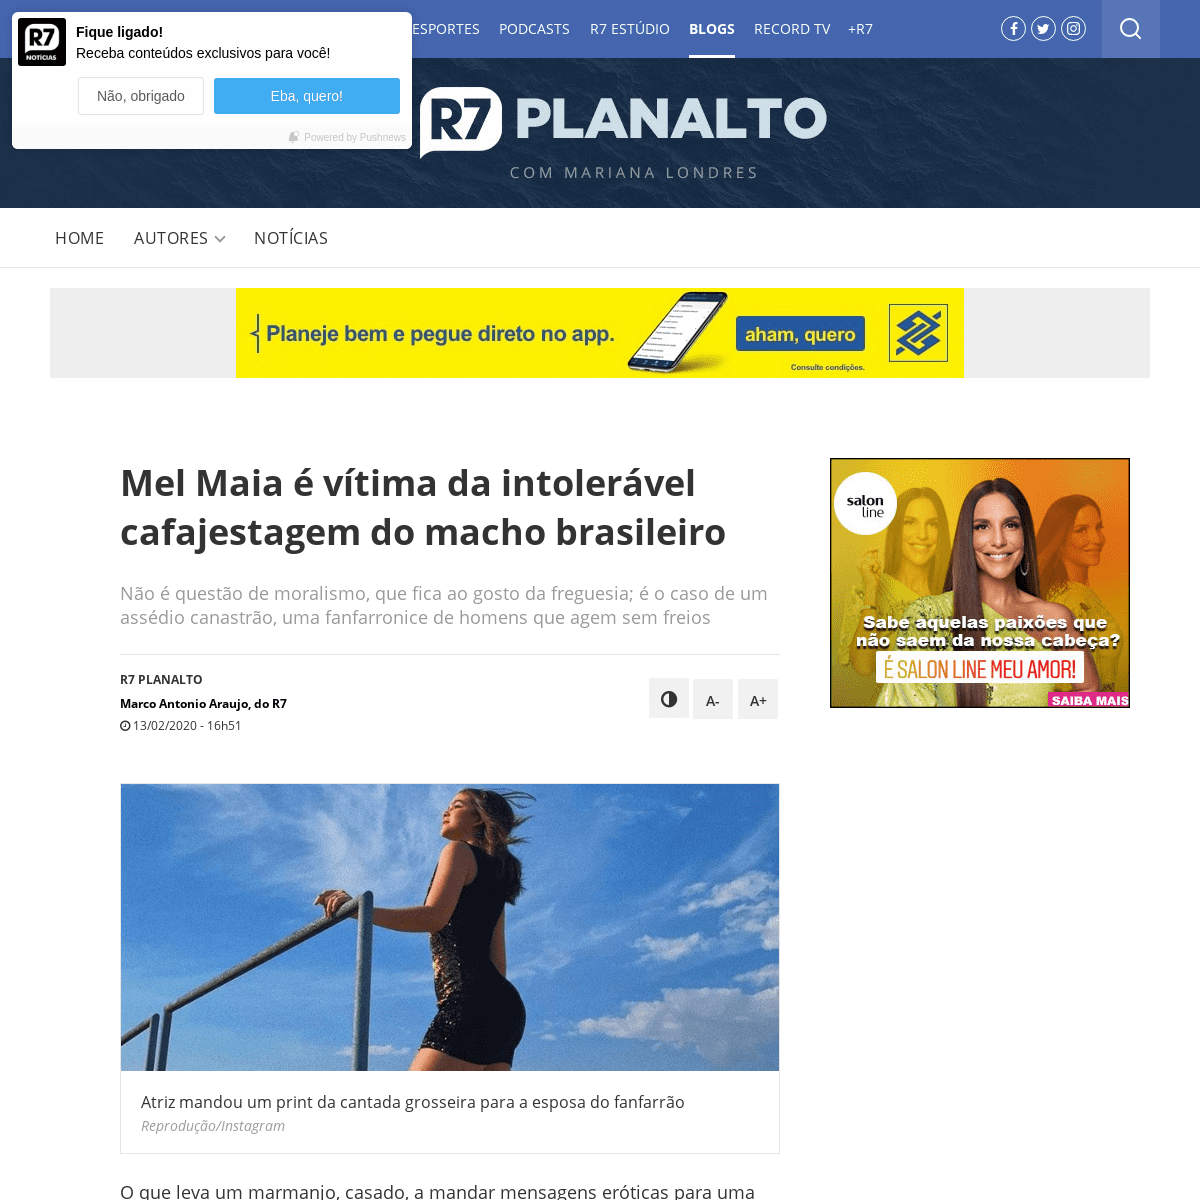 A complete backup of noticias.r7.com/prisma/r7-planalto/mel-maia-e-vitima-da-intoleravel-cafajestagem-do-macho-brasileiro-130220